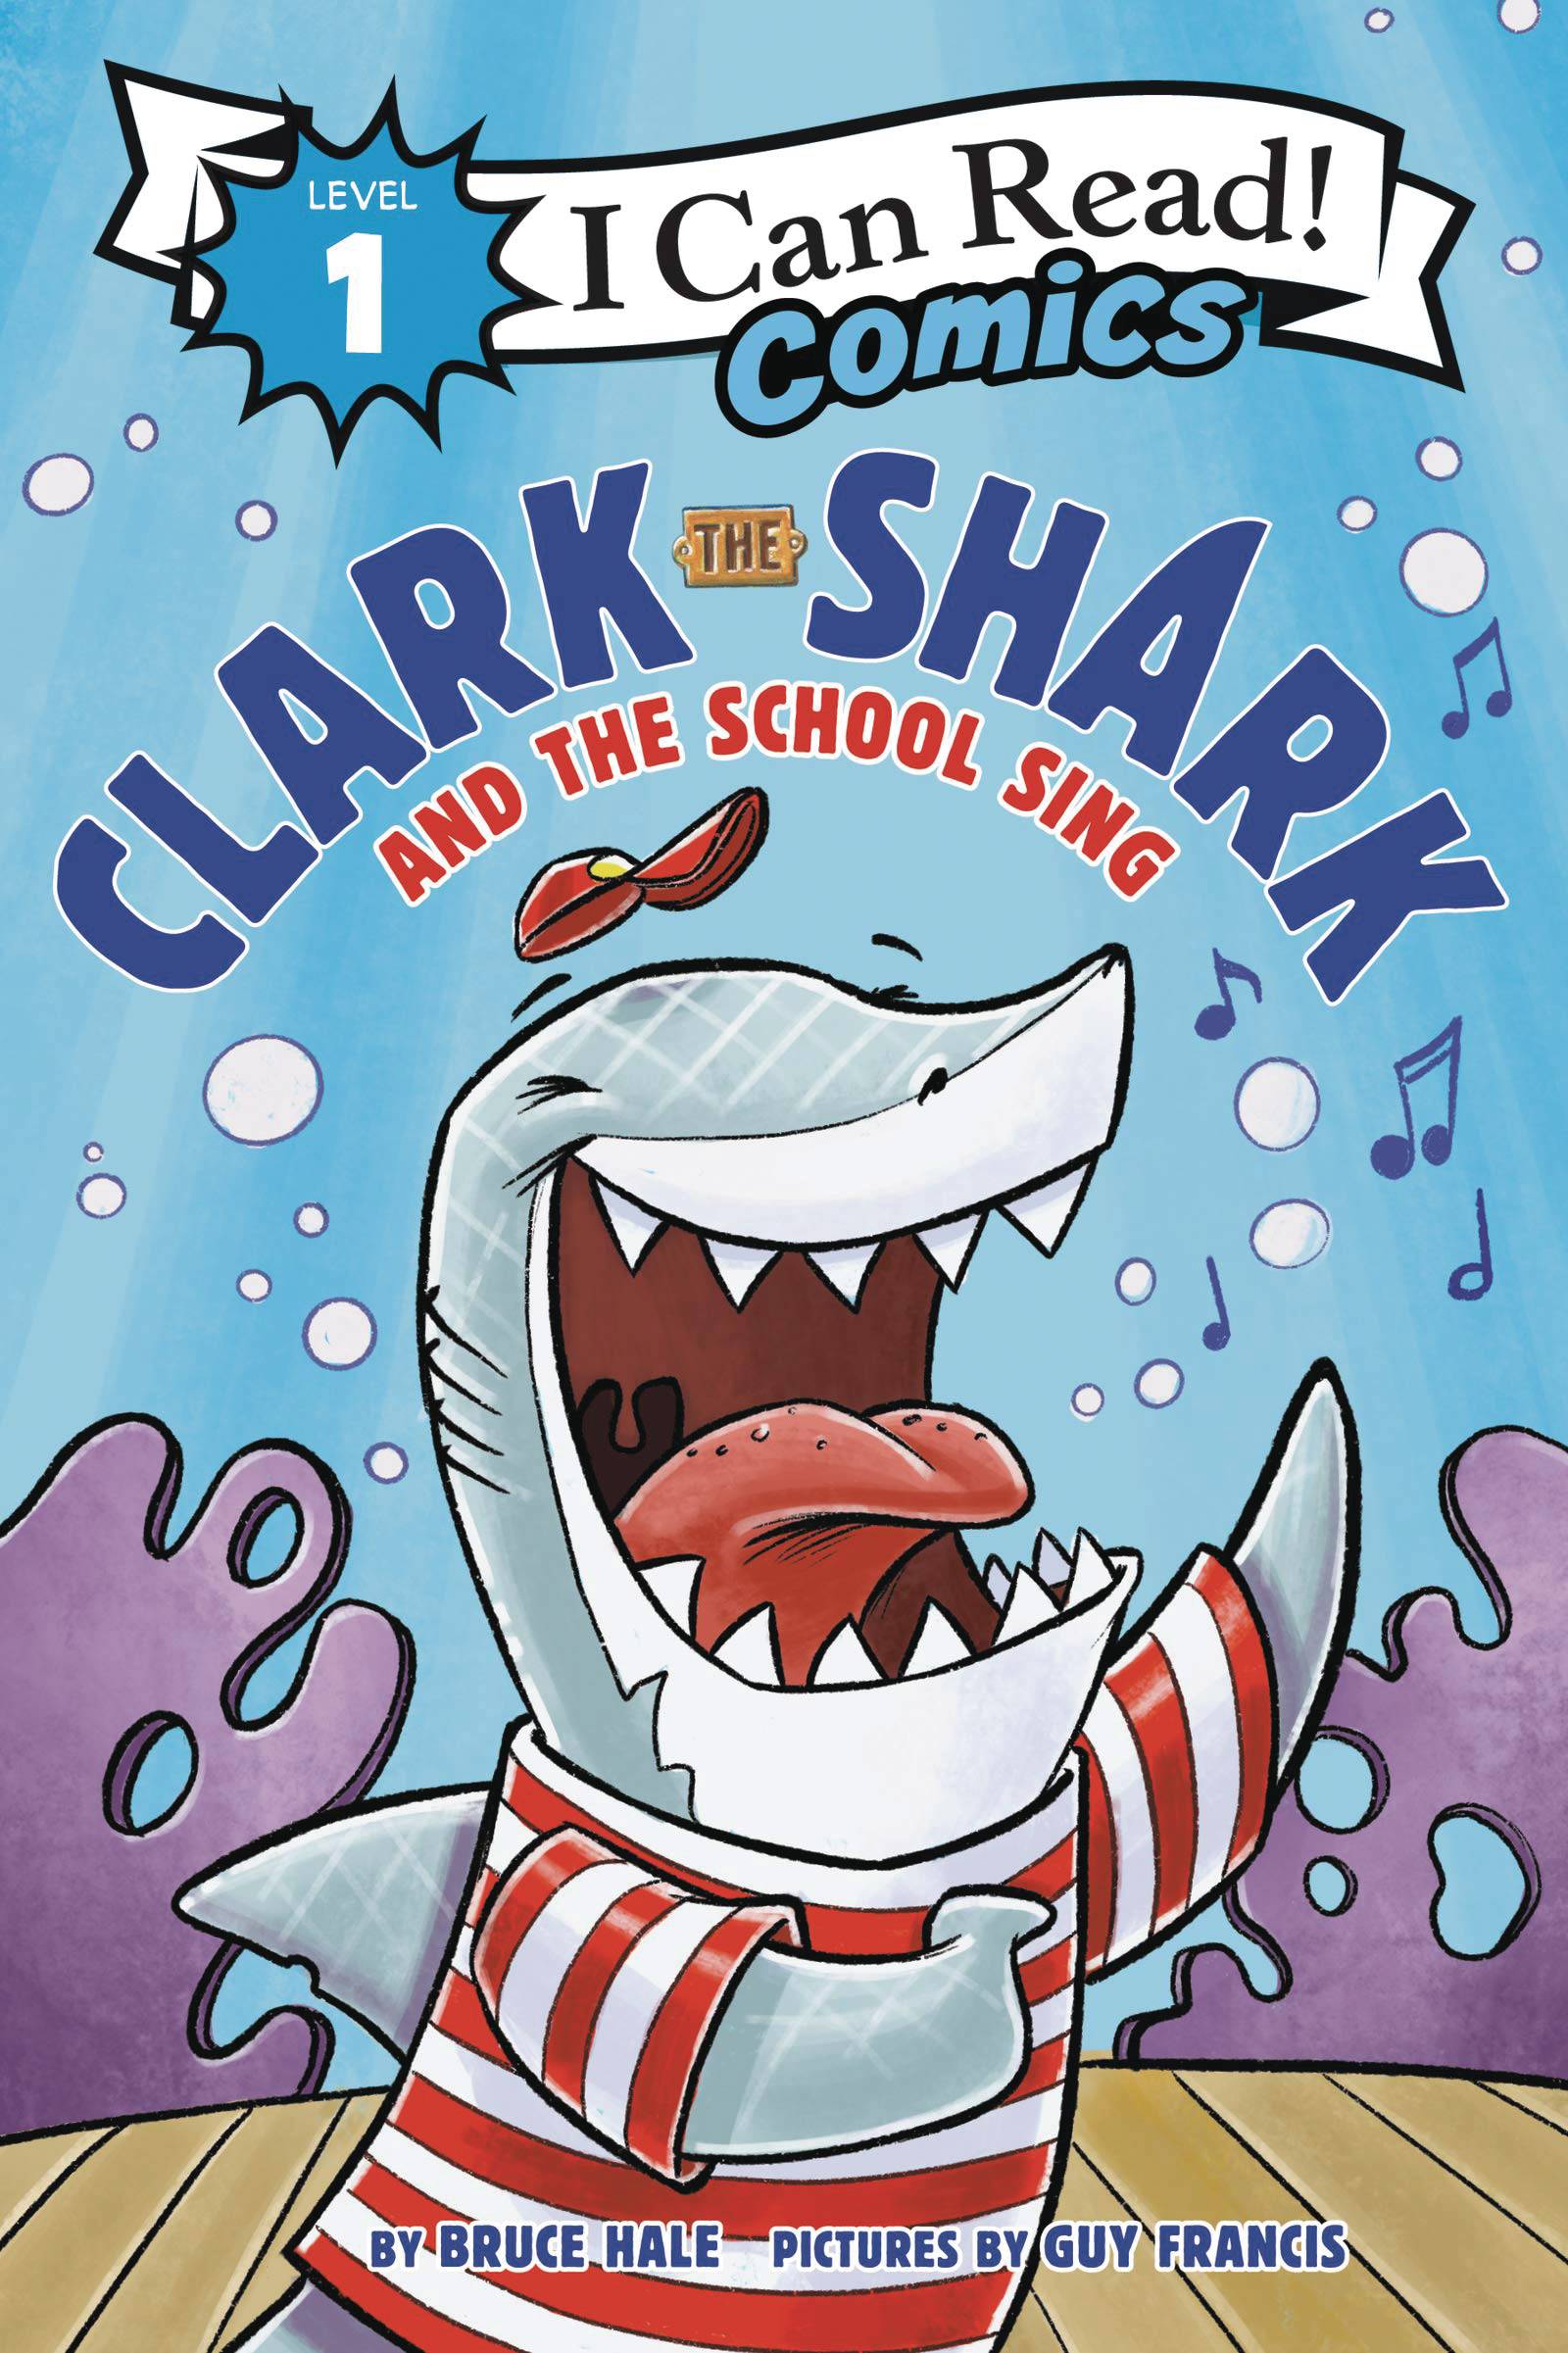 I CAN READ COMICS LEVEL 1 TP CLARK SHARK & SCHOOL SING